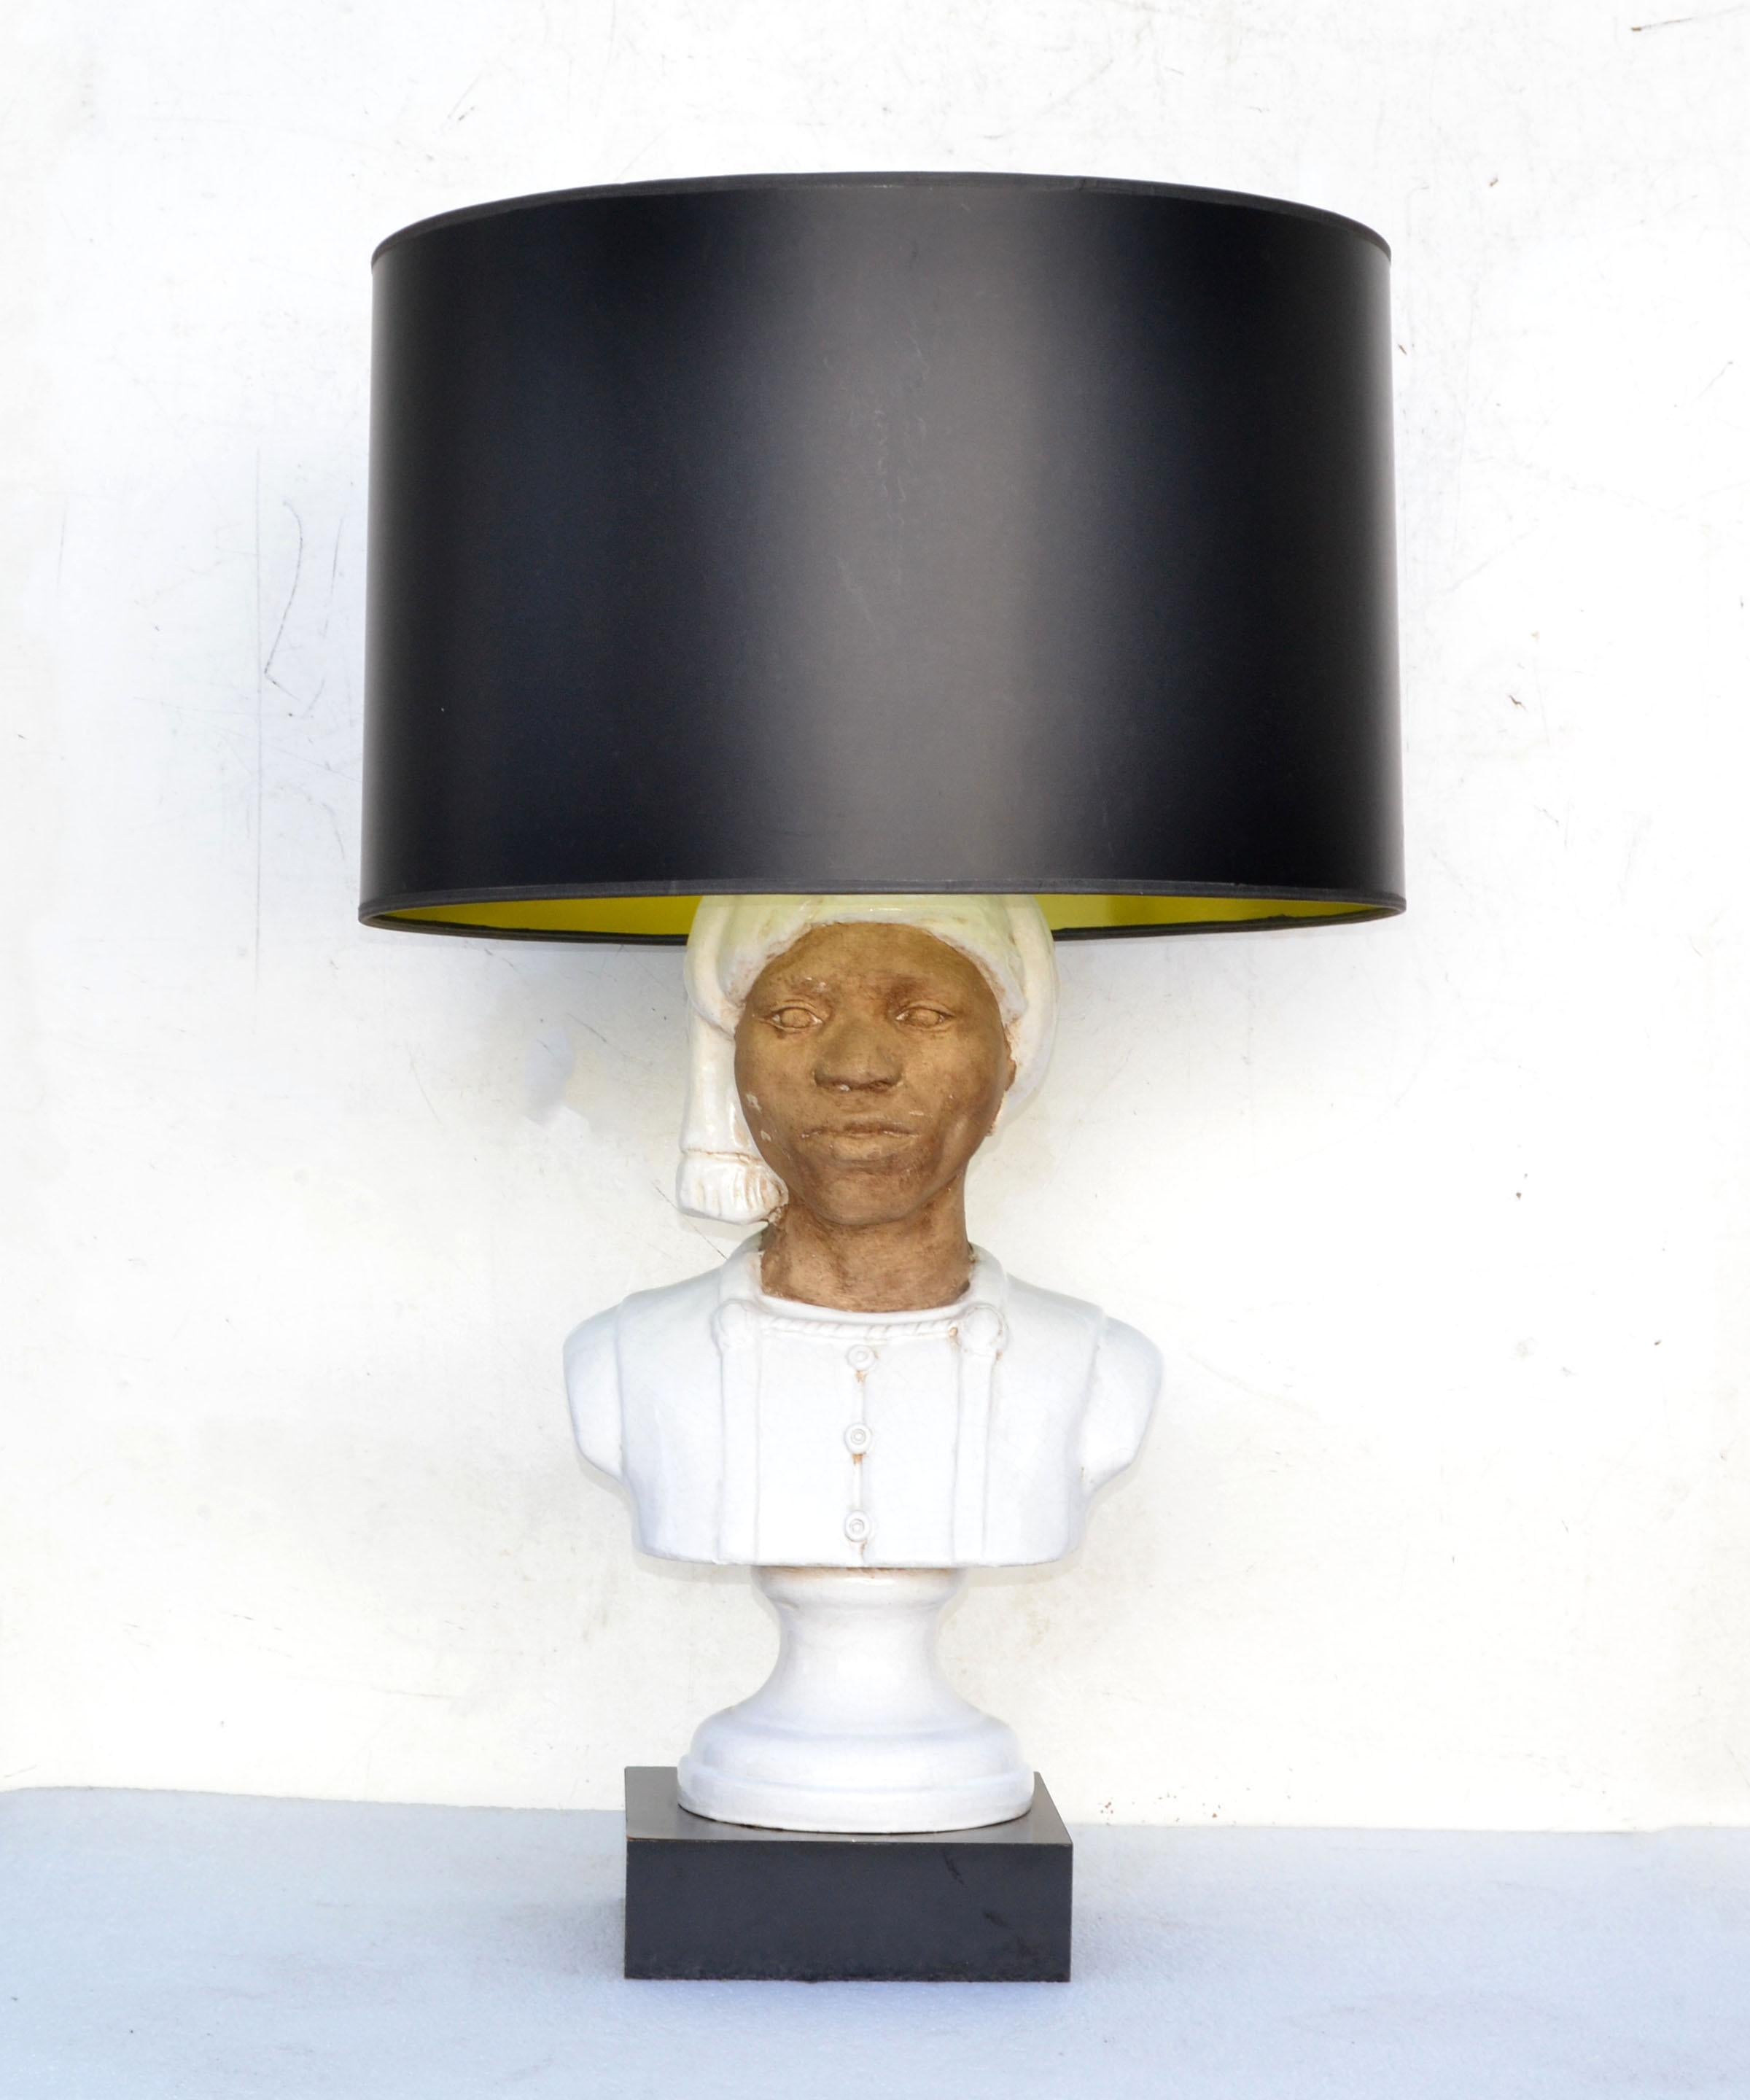 Lampe de table à tête de bédouin unique en son genre.
Le buste est fabriqué à la main en terre cuite et en céramique et monté sur une base laquée noire.
Marqué au revers.
Câblé pour l'Europe, peut être modifié pour un câblage américain. Il est en